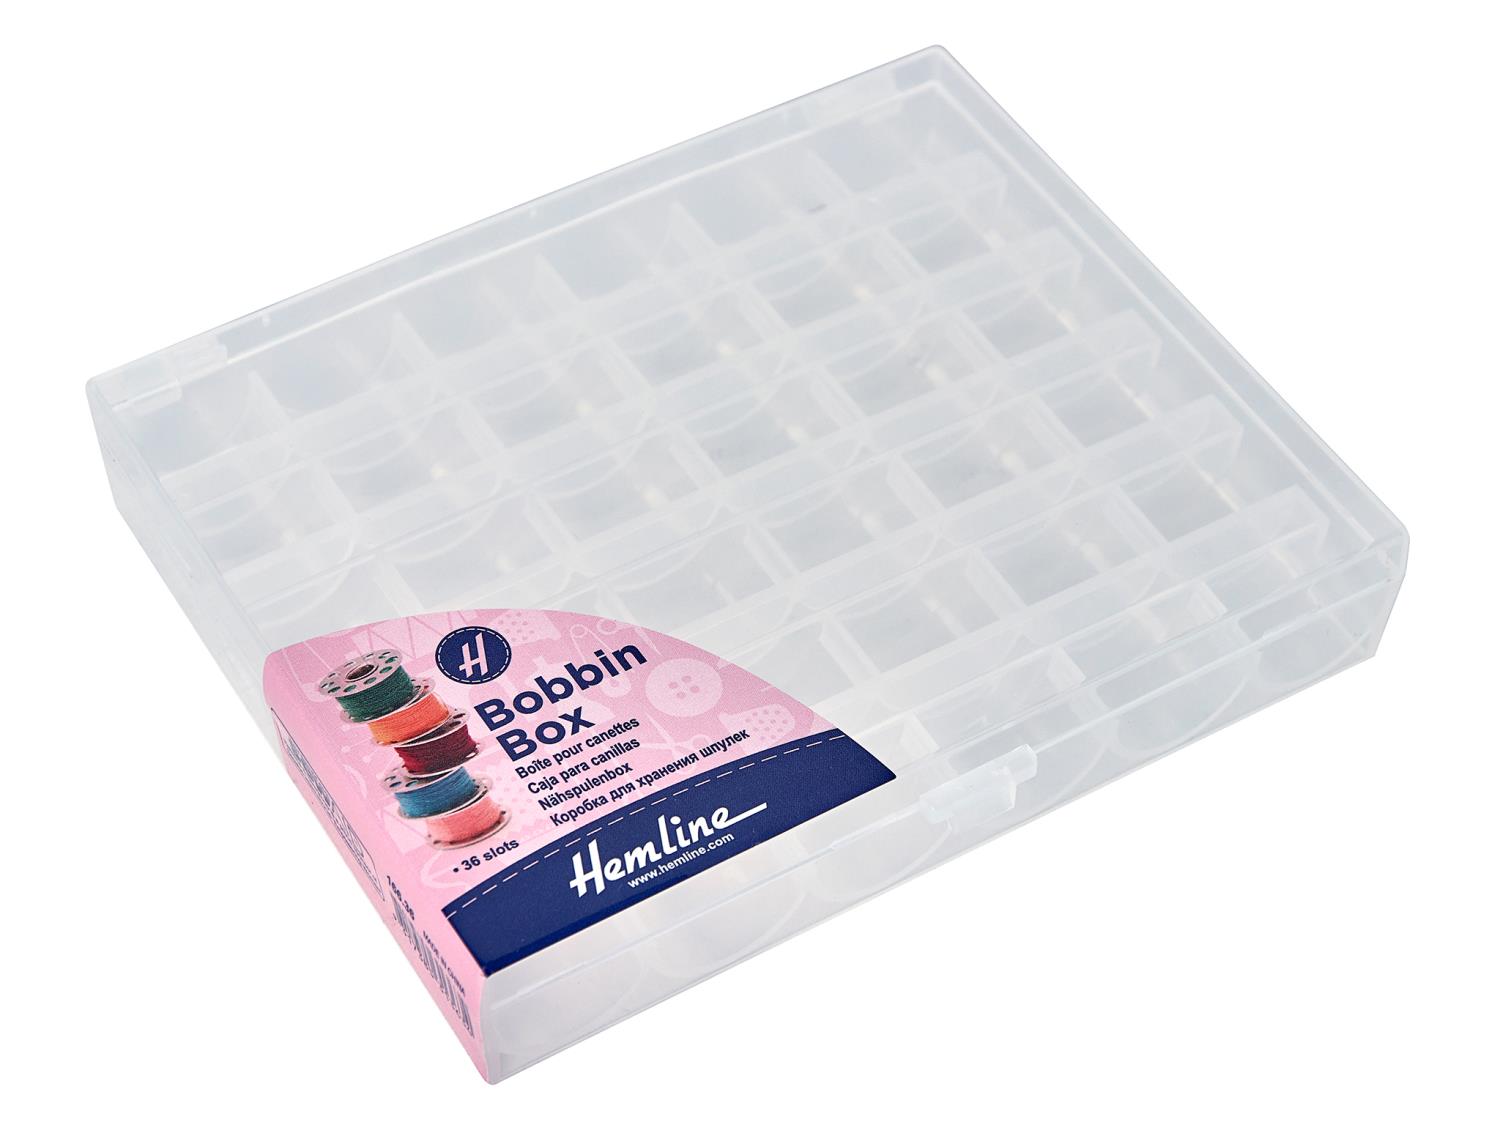 HemLine - Spoleboks plast 36 spoler